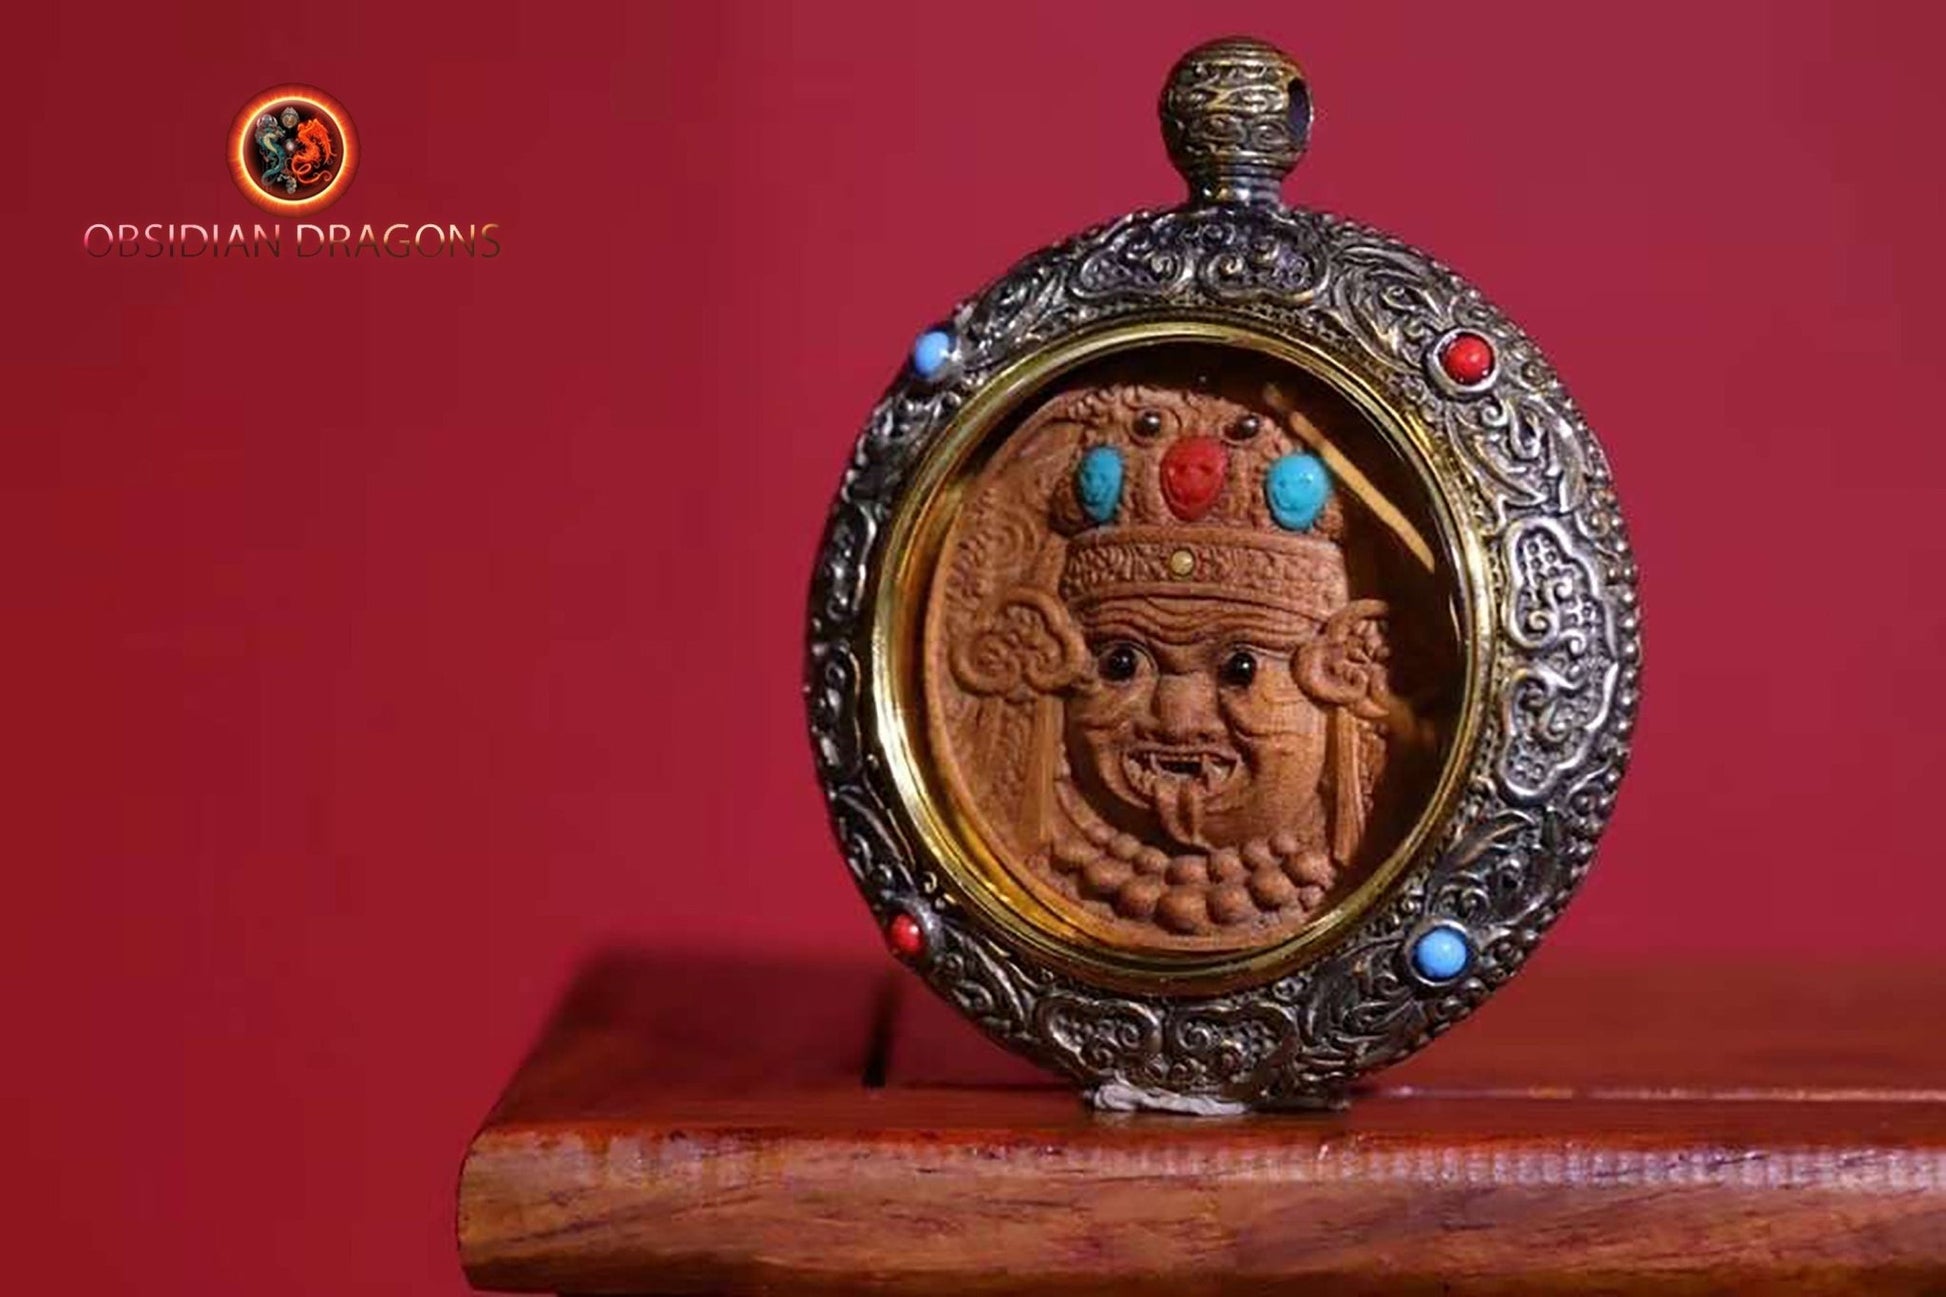 Pendentif, amulette bouddhiste tibétaine, divinité Zakiram richesse et bonne fortune Santal exceptionnel dit de Laoshan argent 925 turquoise - obsidian dragon